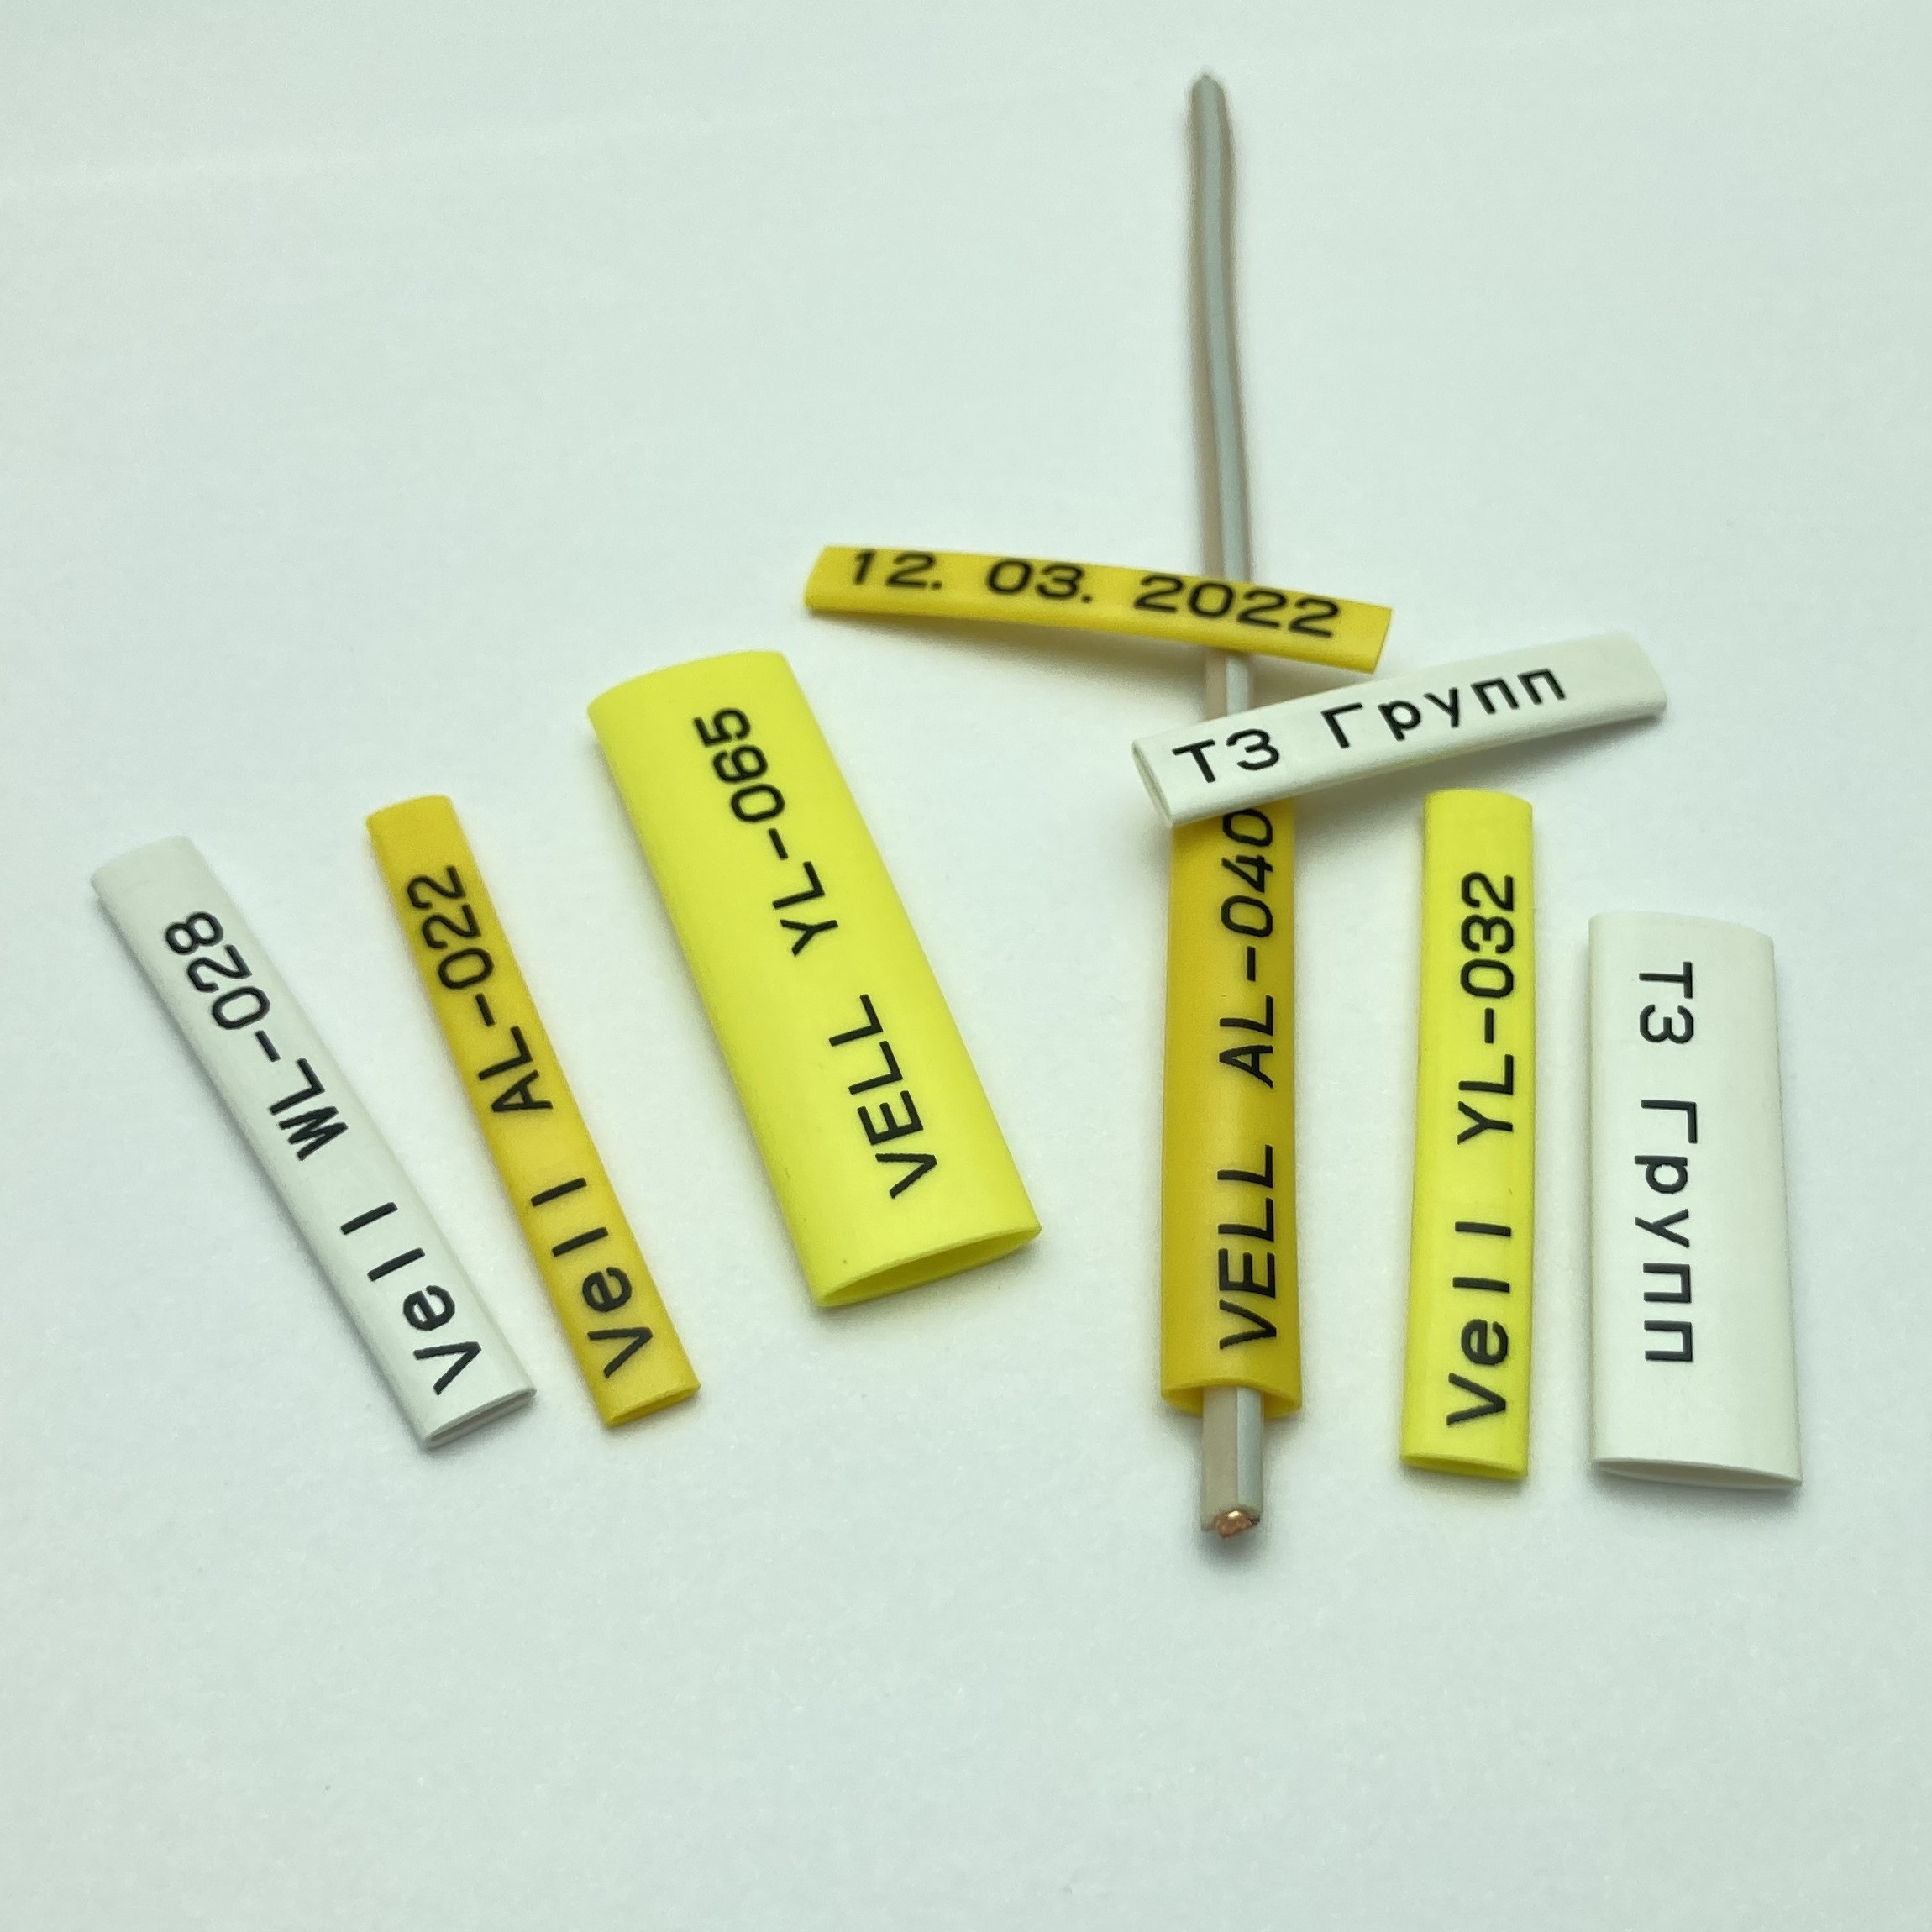 Фото Профиль ПВХ овальный Vell YL-036 для маркировки проводов, Ø 3,6 мм, 200 метров, желтый, аналог Partex PO-06 (самозатухающий) {378022} (4)